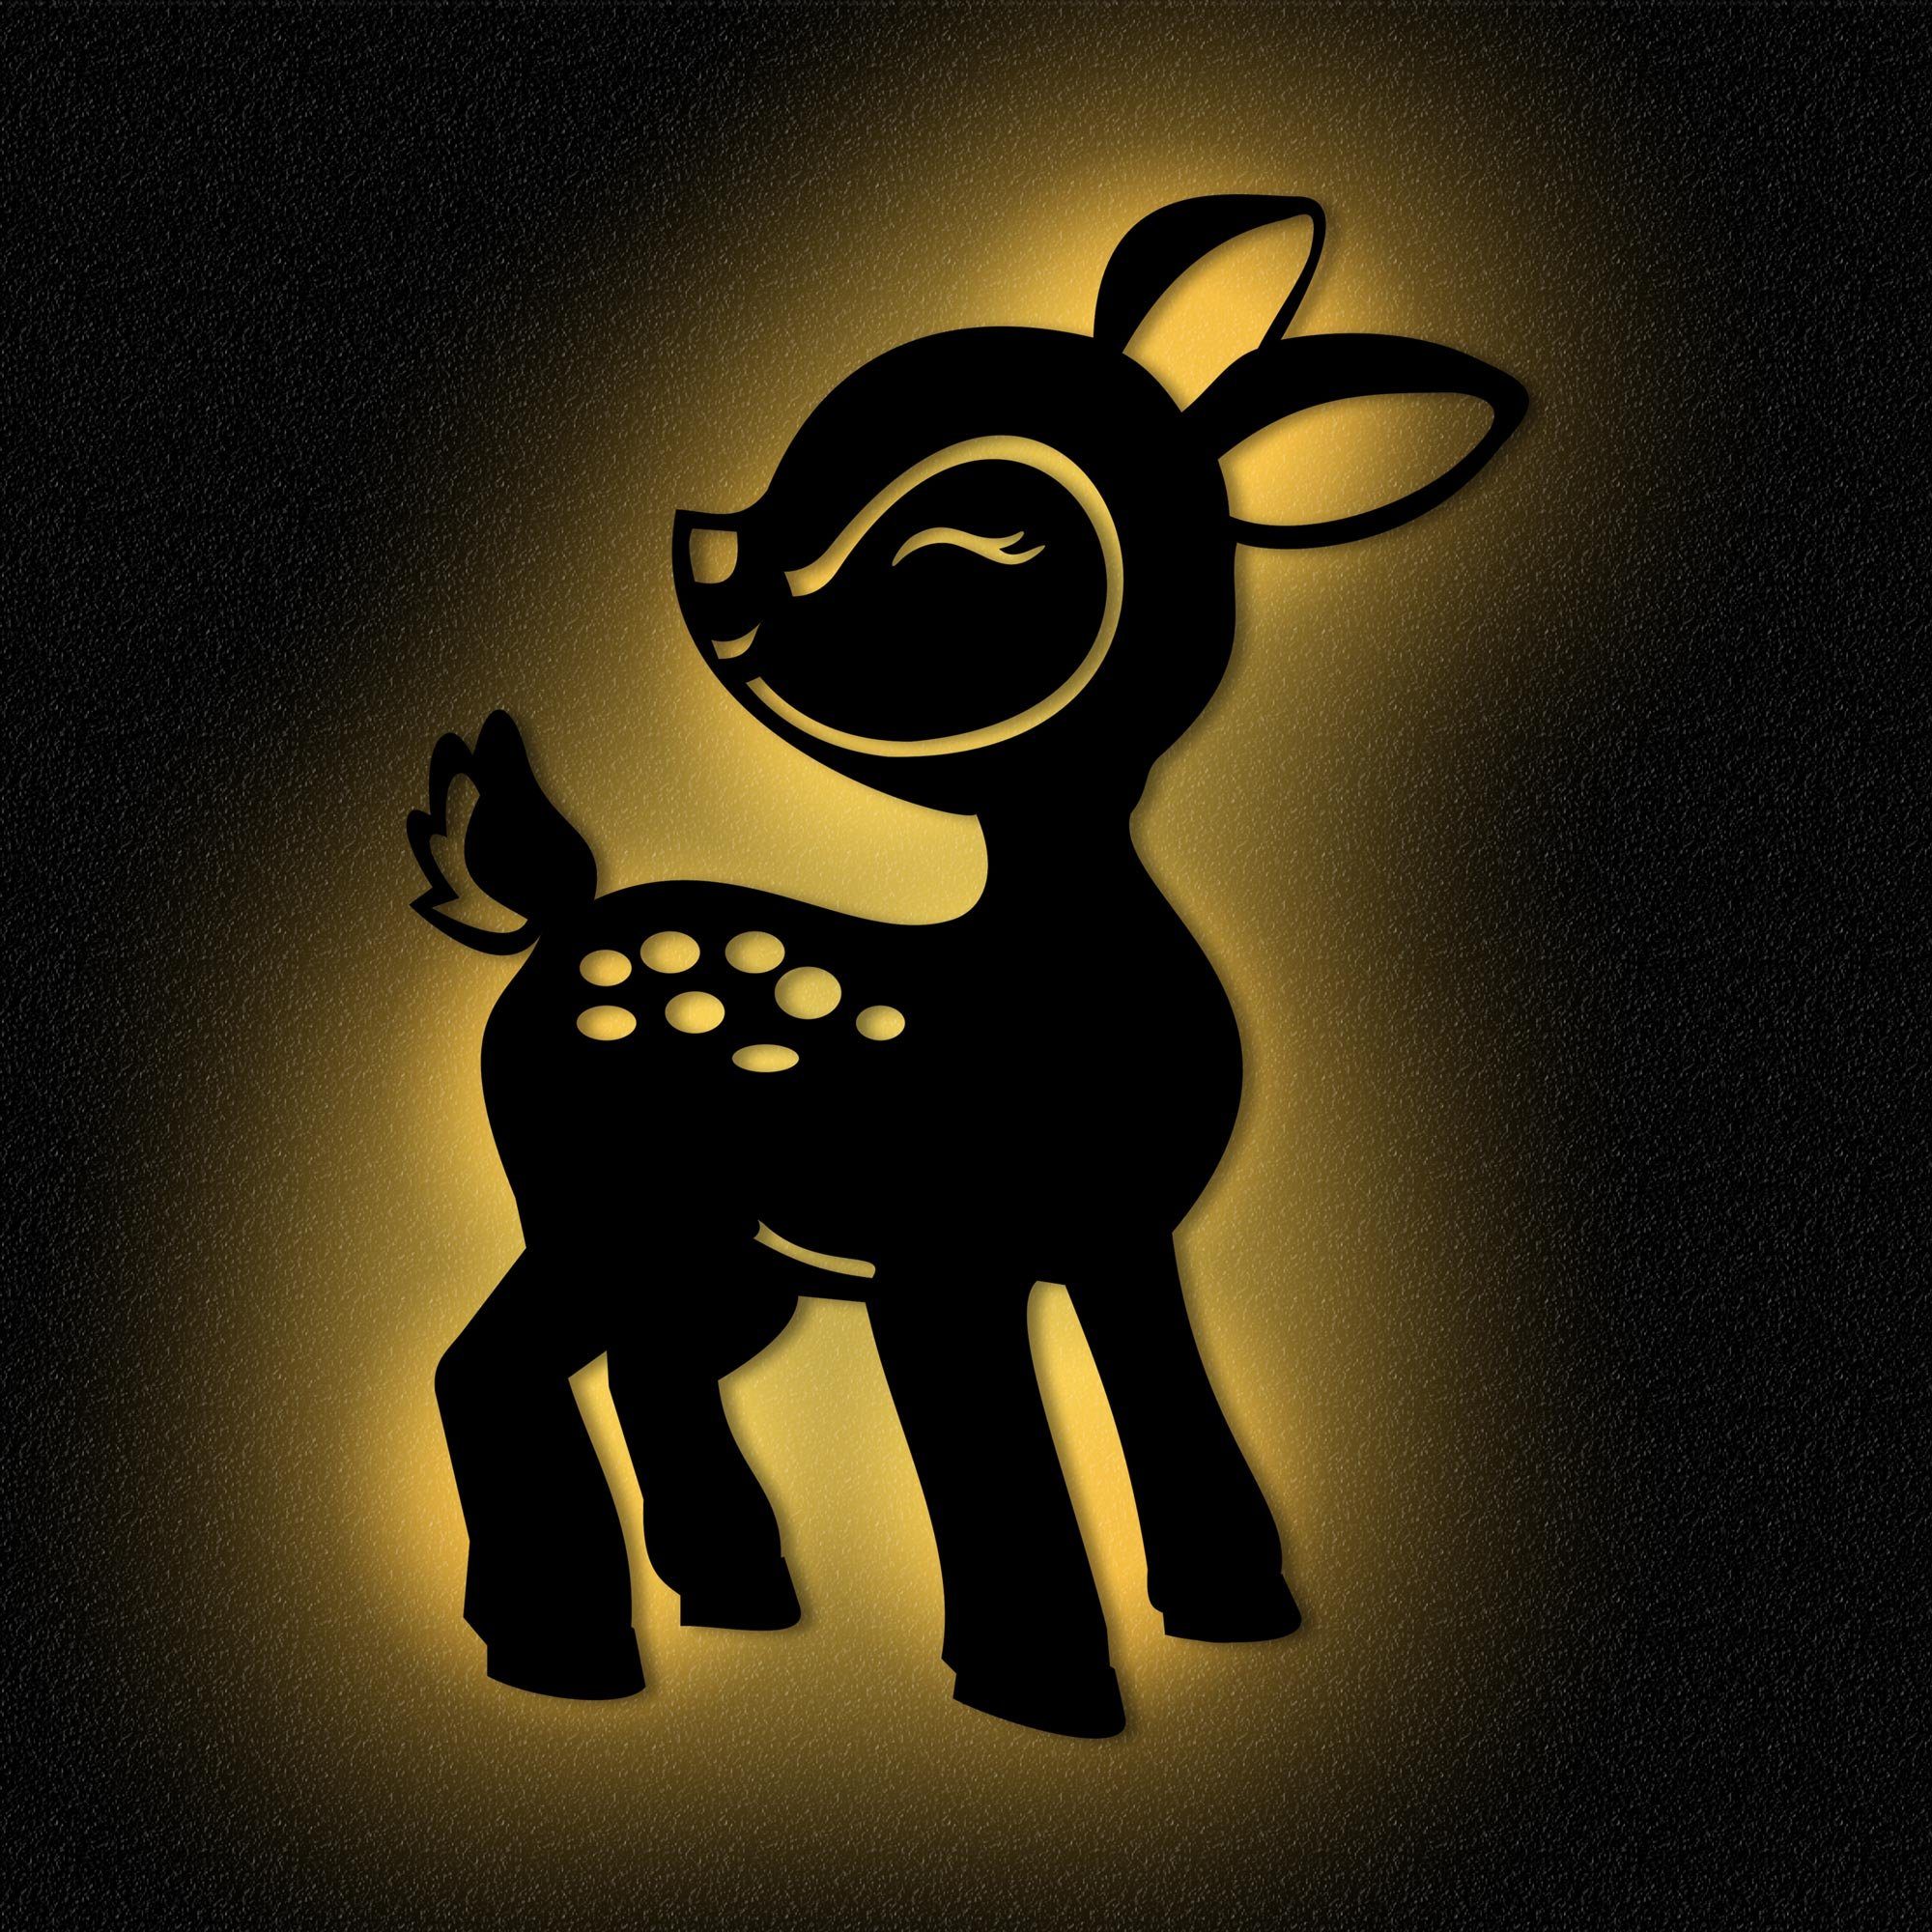 Namofactur LED Nachtlicht Reh - Schlaflicht mit Tier-Motiv für Kleinkinder  - Wand Deko Lampe, LED fest integriert, Warmweiß, Wanddekoobjekt  Kinderzimmer Leuchte batteriebetrieben